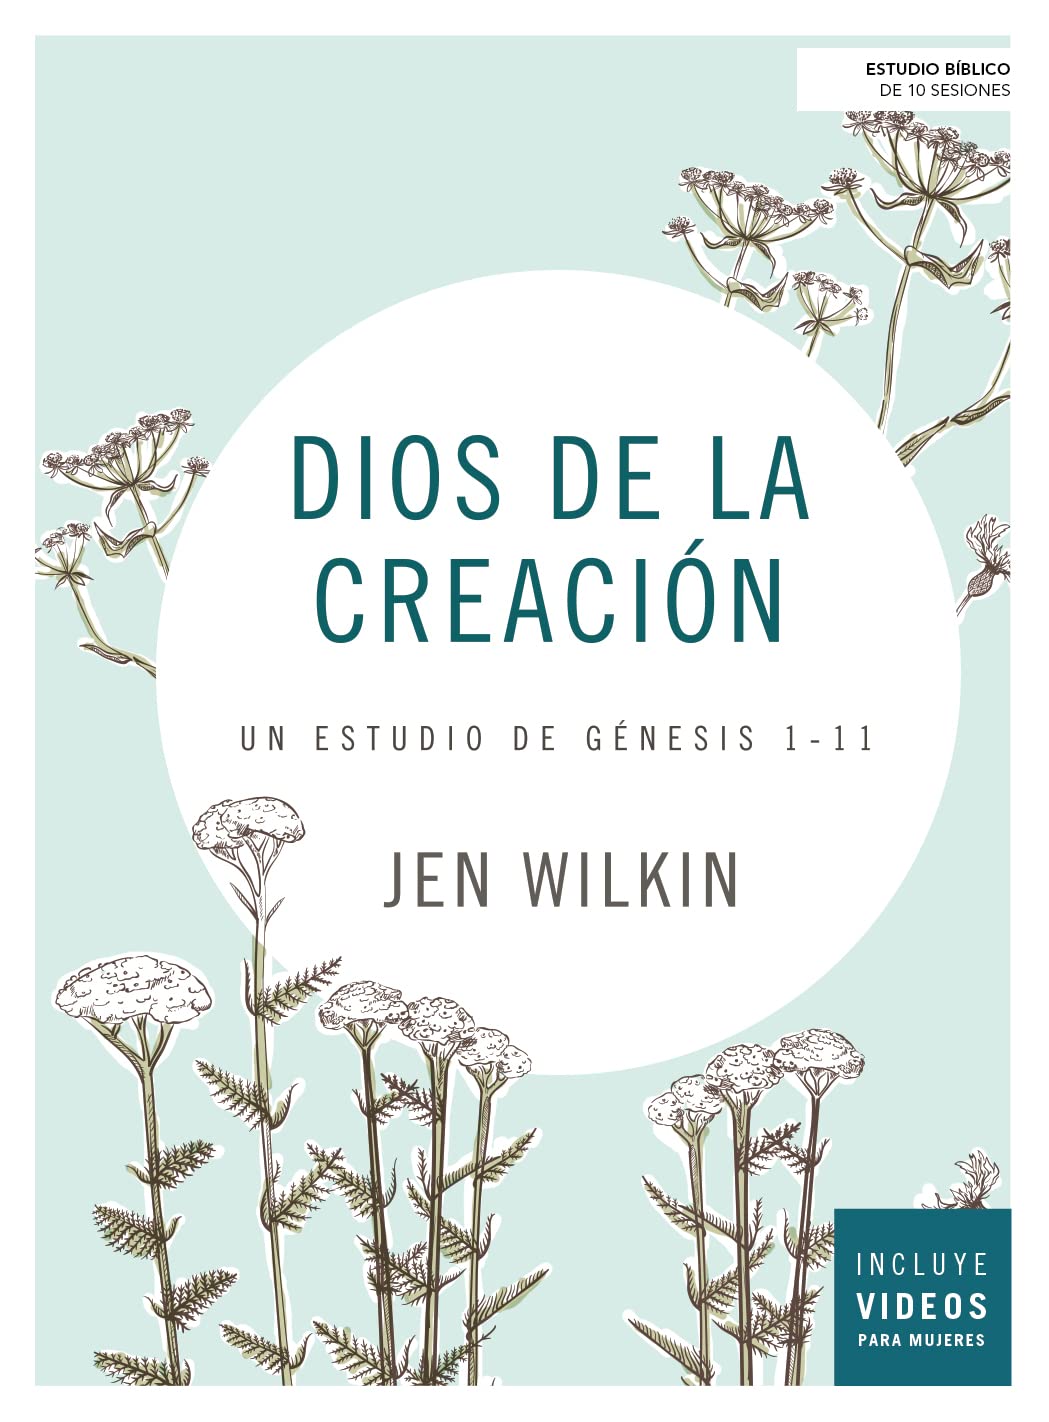 Dios de la Creación - Un Estudio de Génesis 1-11 - Jen Wilkin